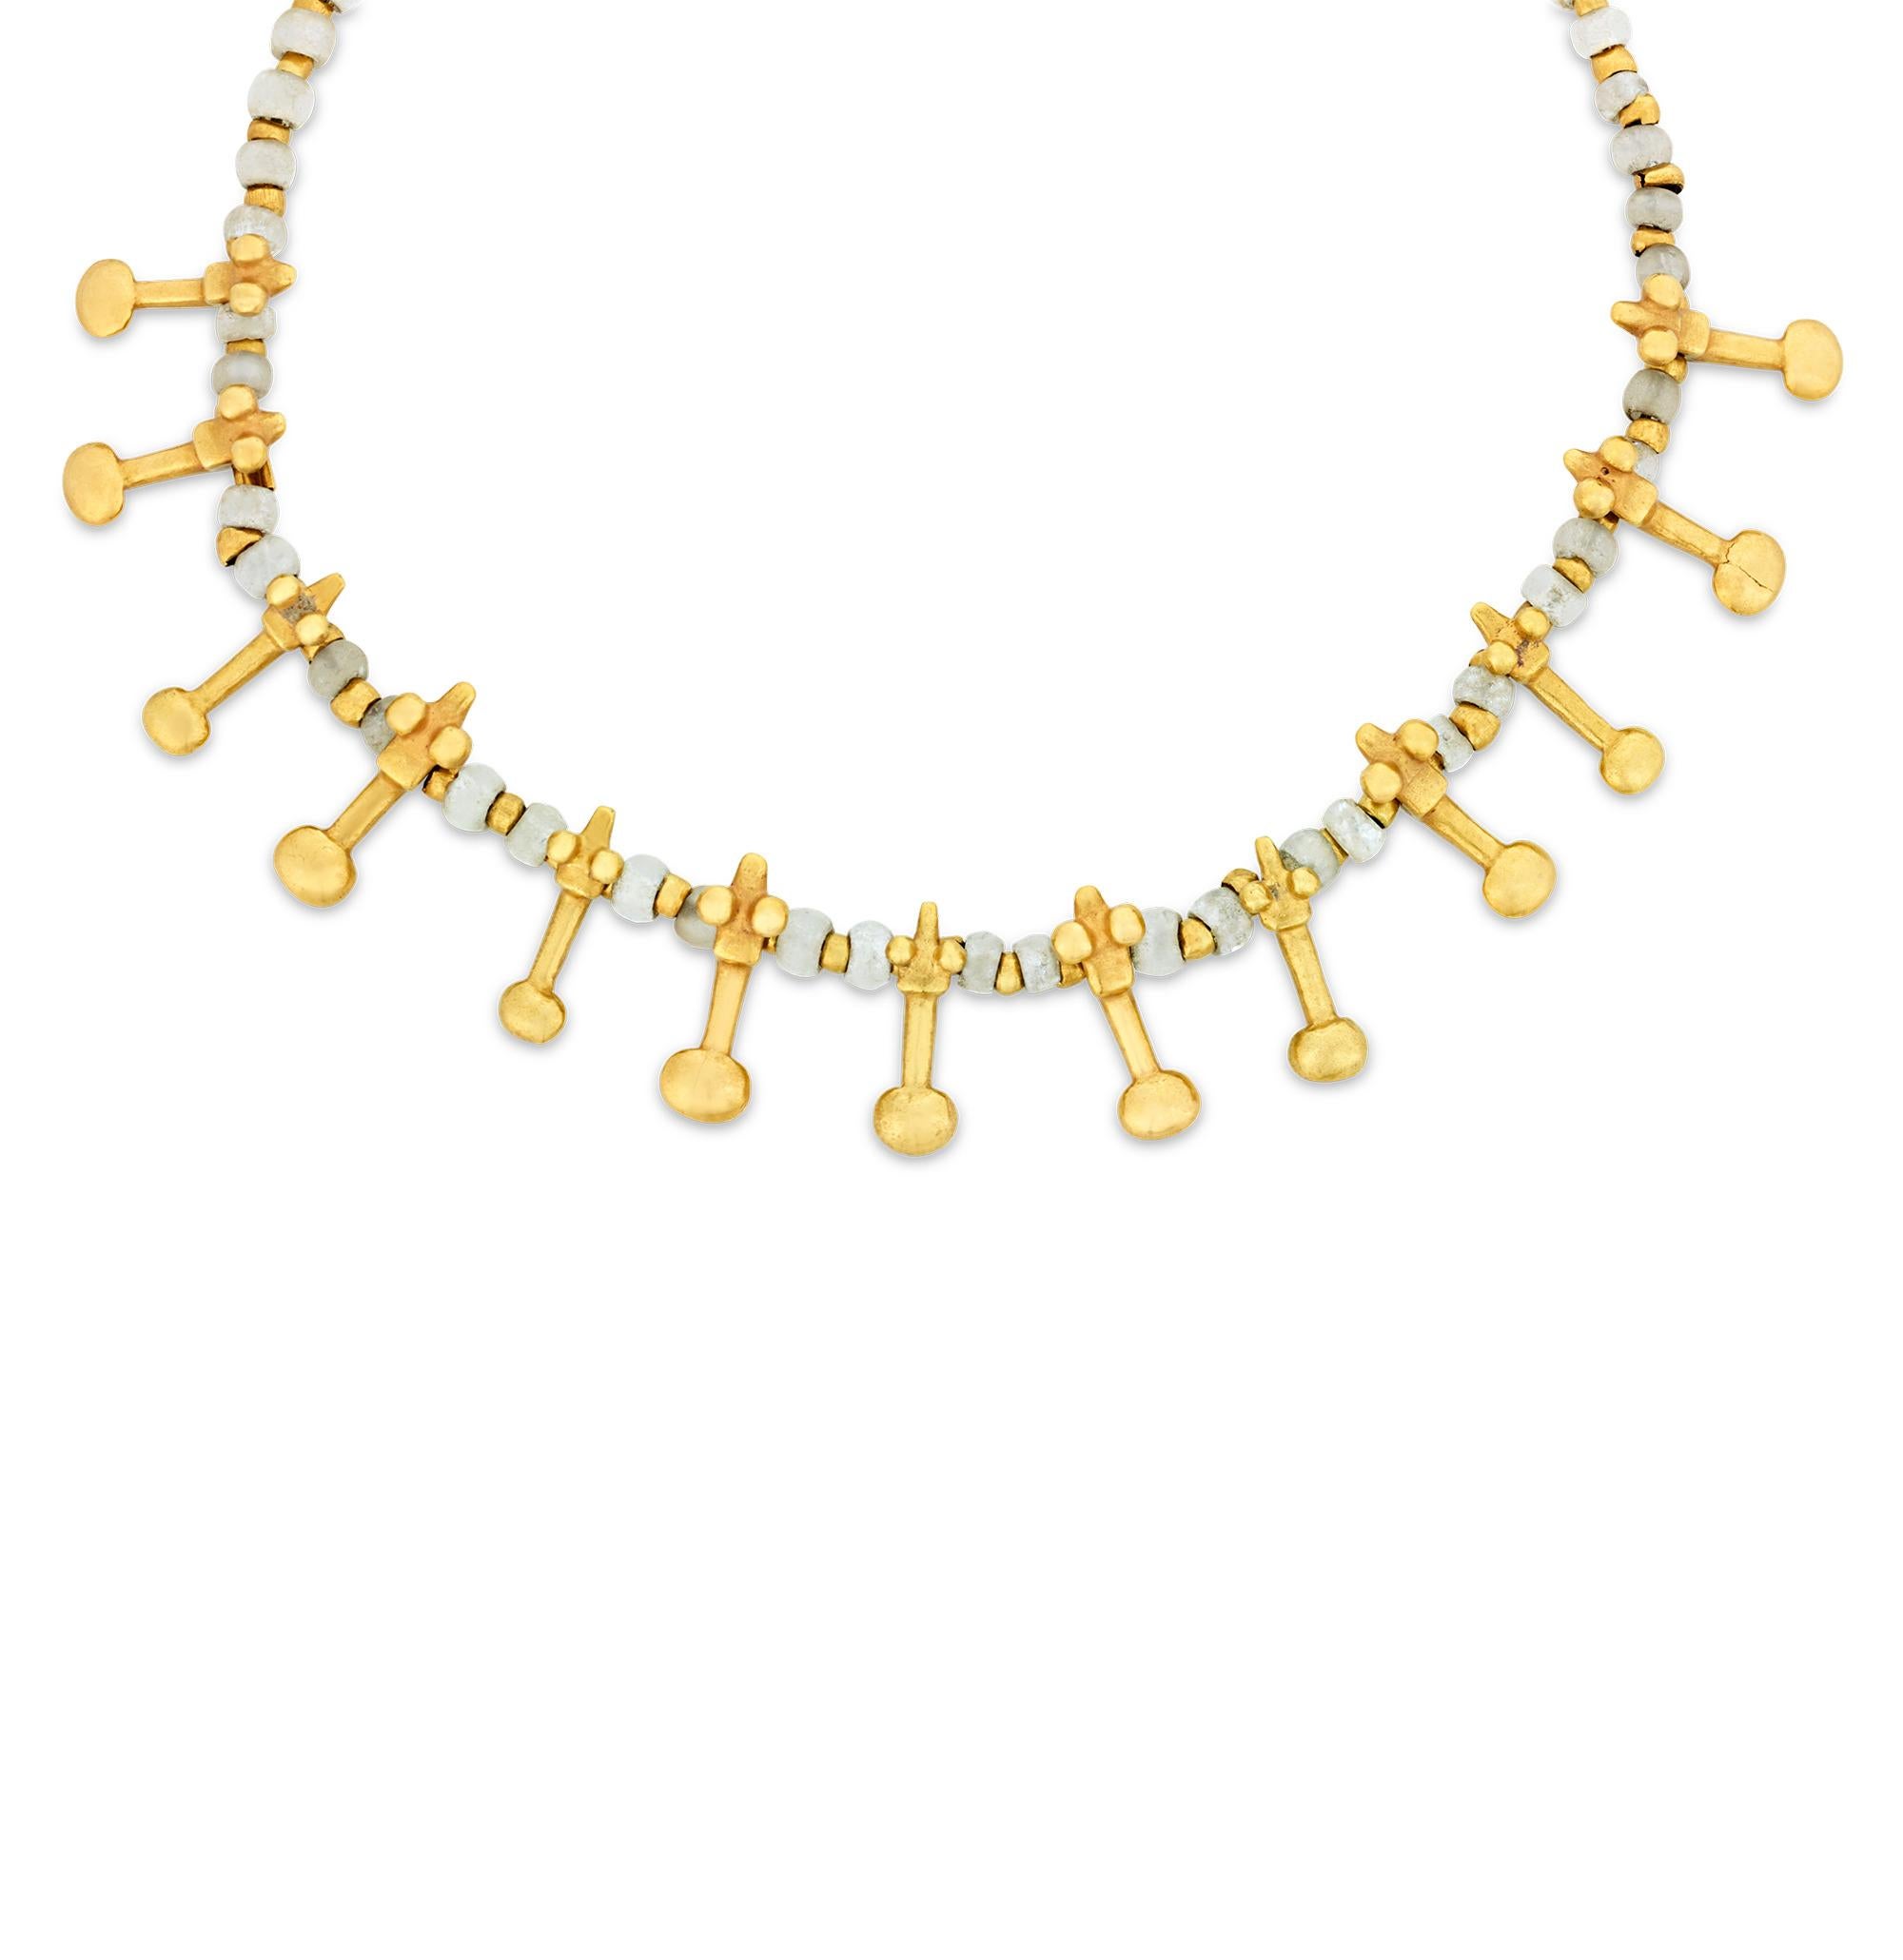 Ce collier en or et en perles a été fabriqué par un artisan Pre-Columbian de la région de Gran Coclé au Panama. Il représente une riche tradition culturelle de parure, utilisant certaines des techniques de fonte d'or les plus avancées connues dans